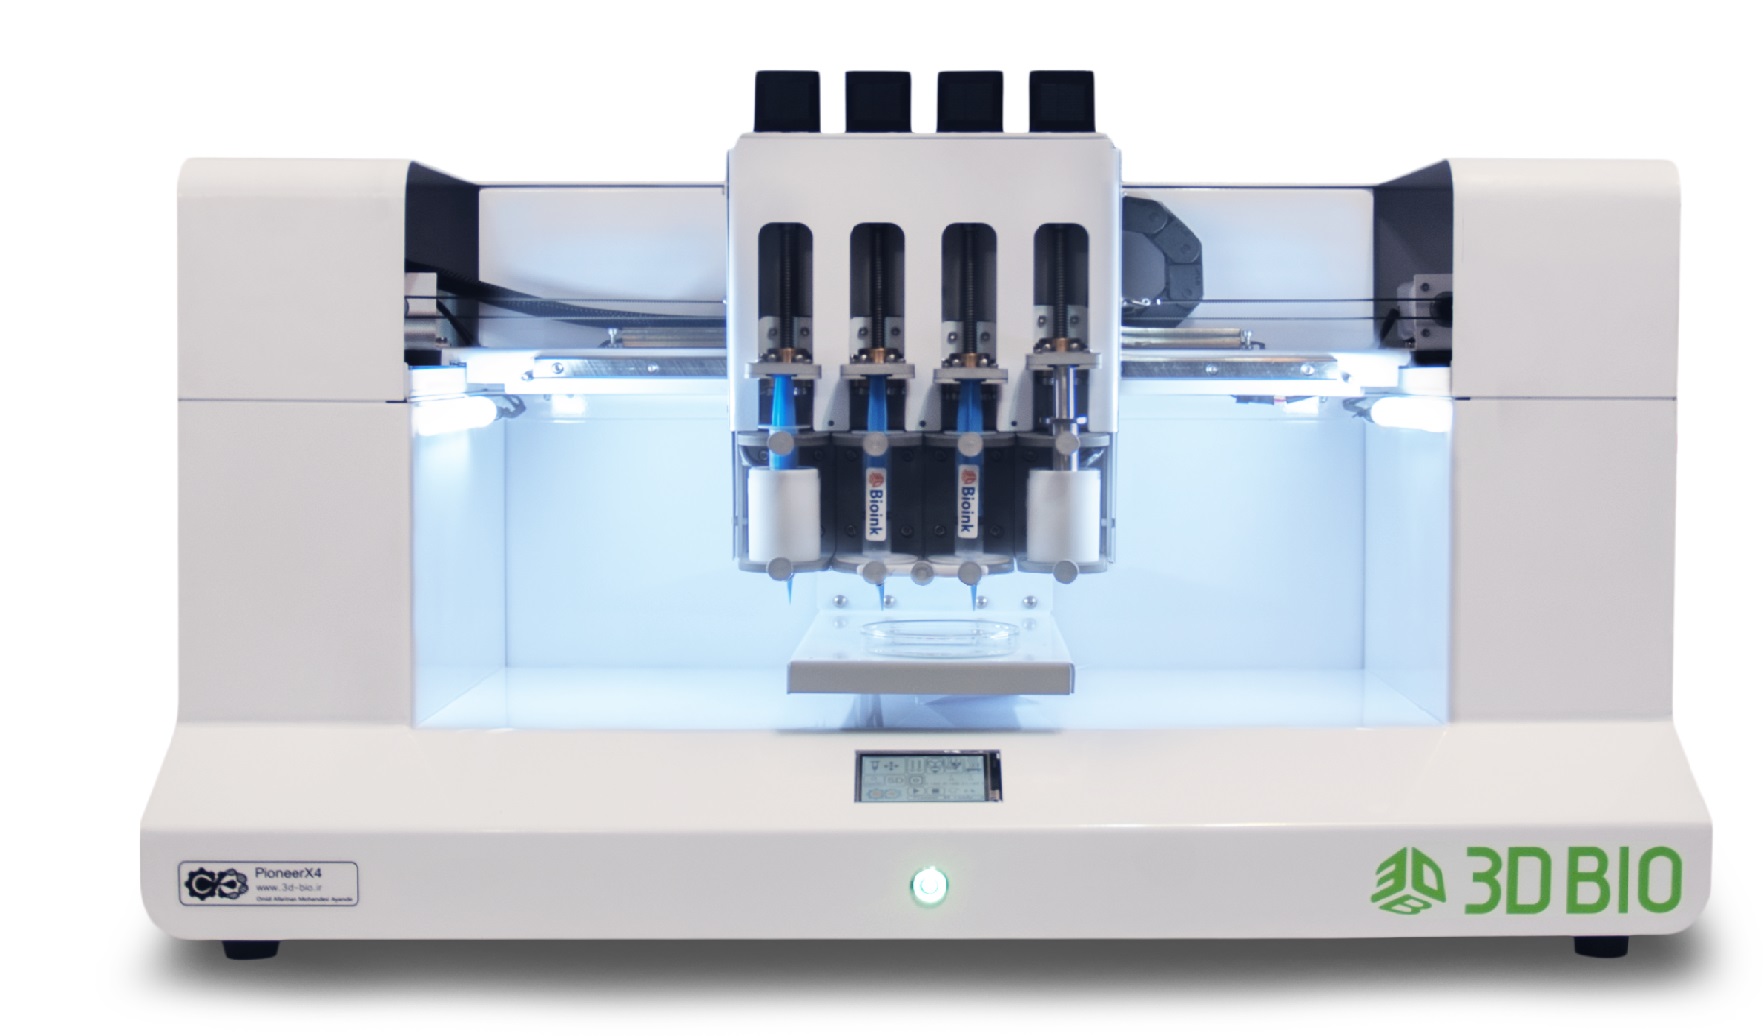 چاپگر زیستی سه بعدی (بایوپرینتر)